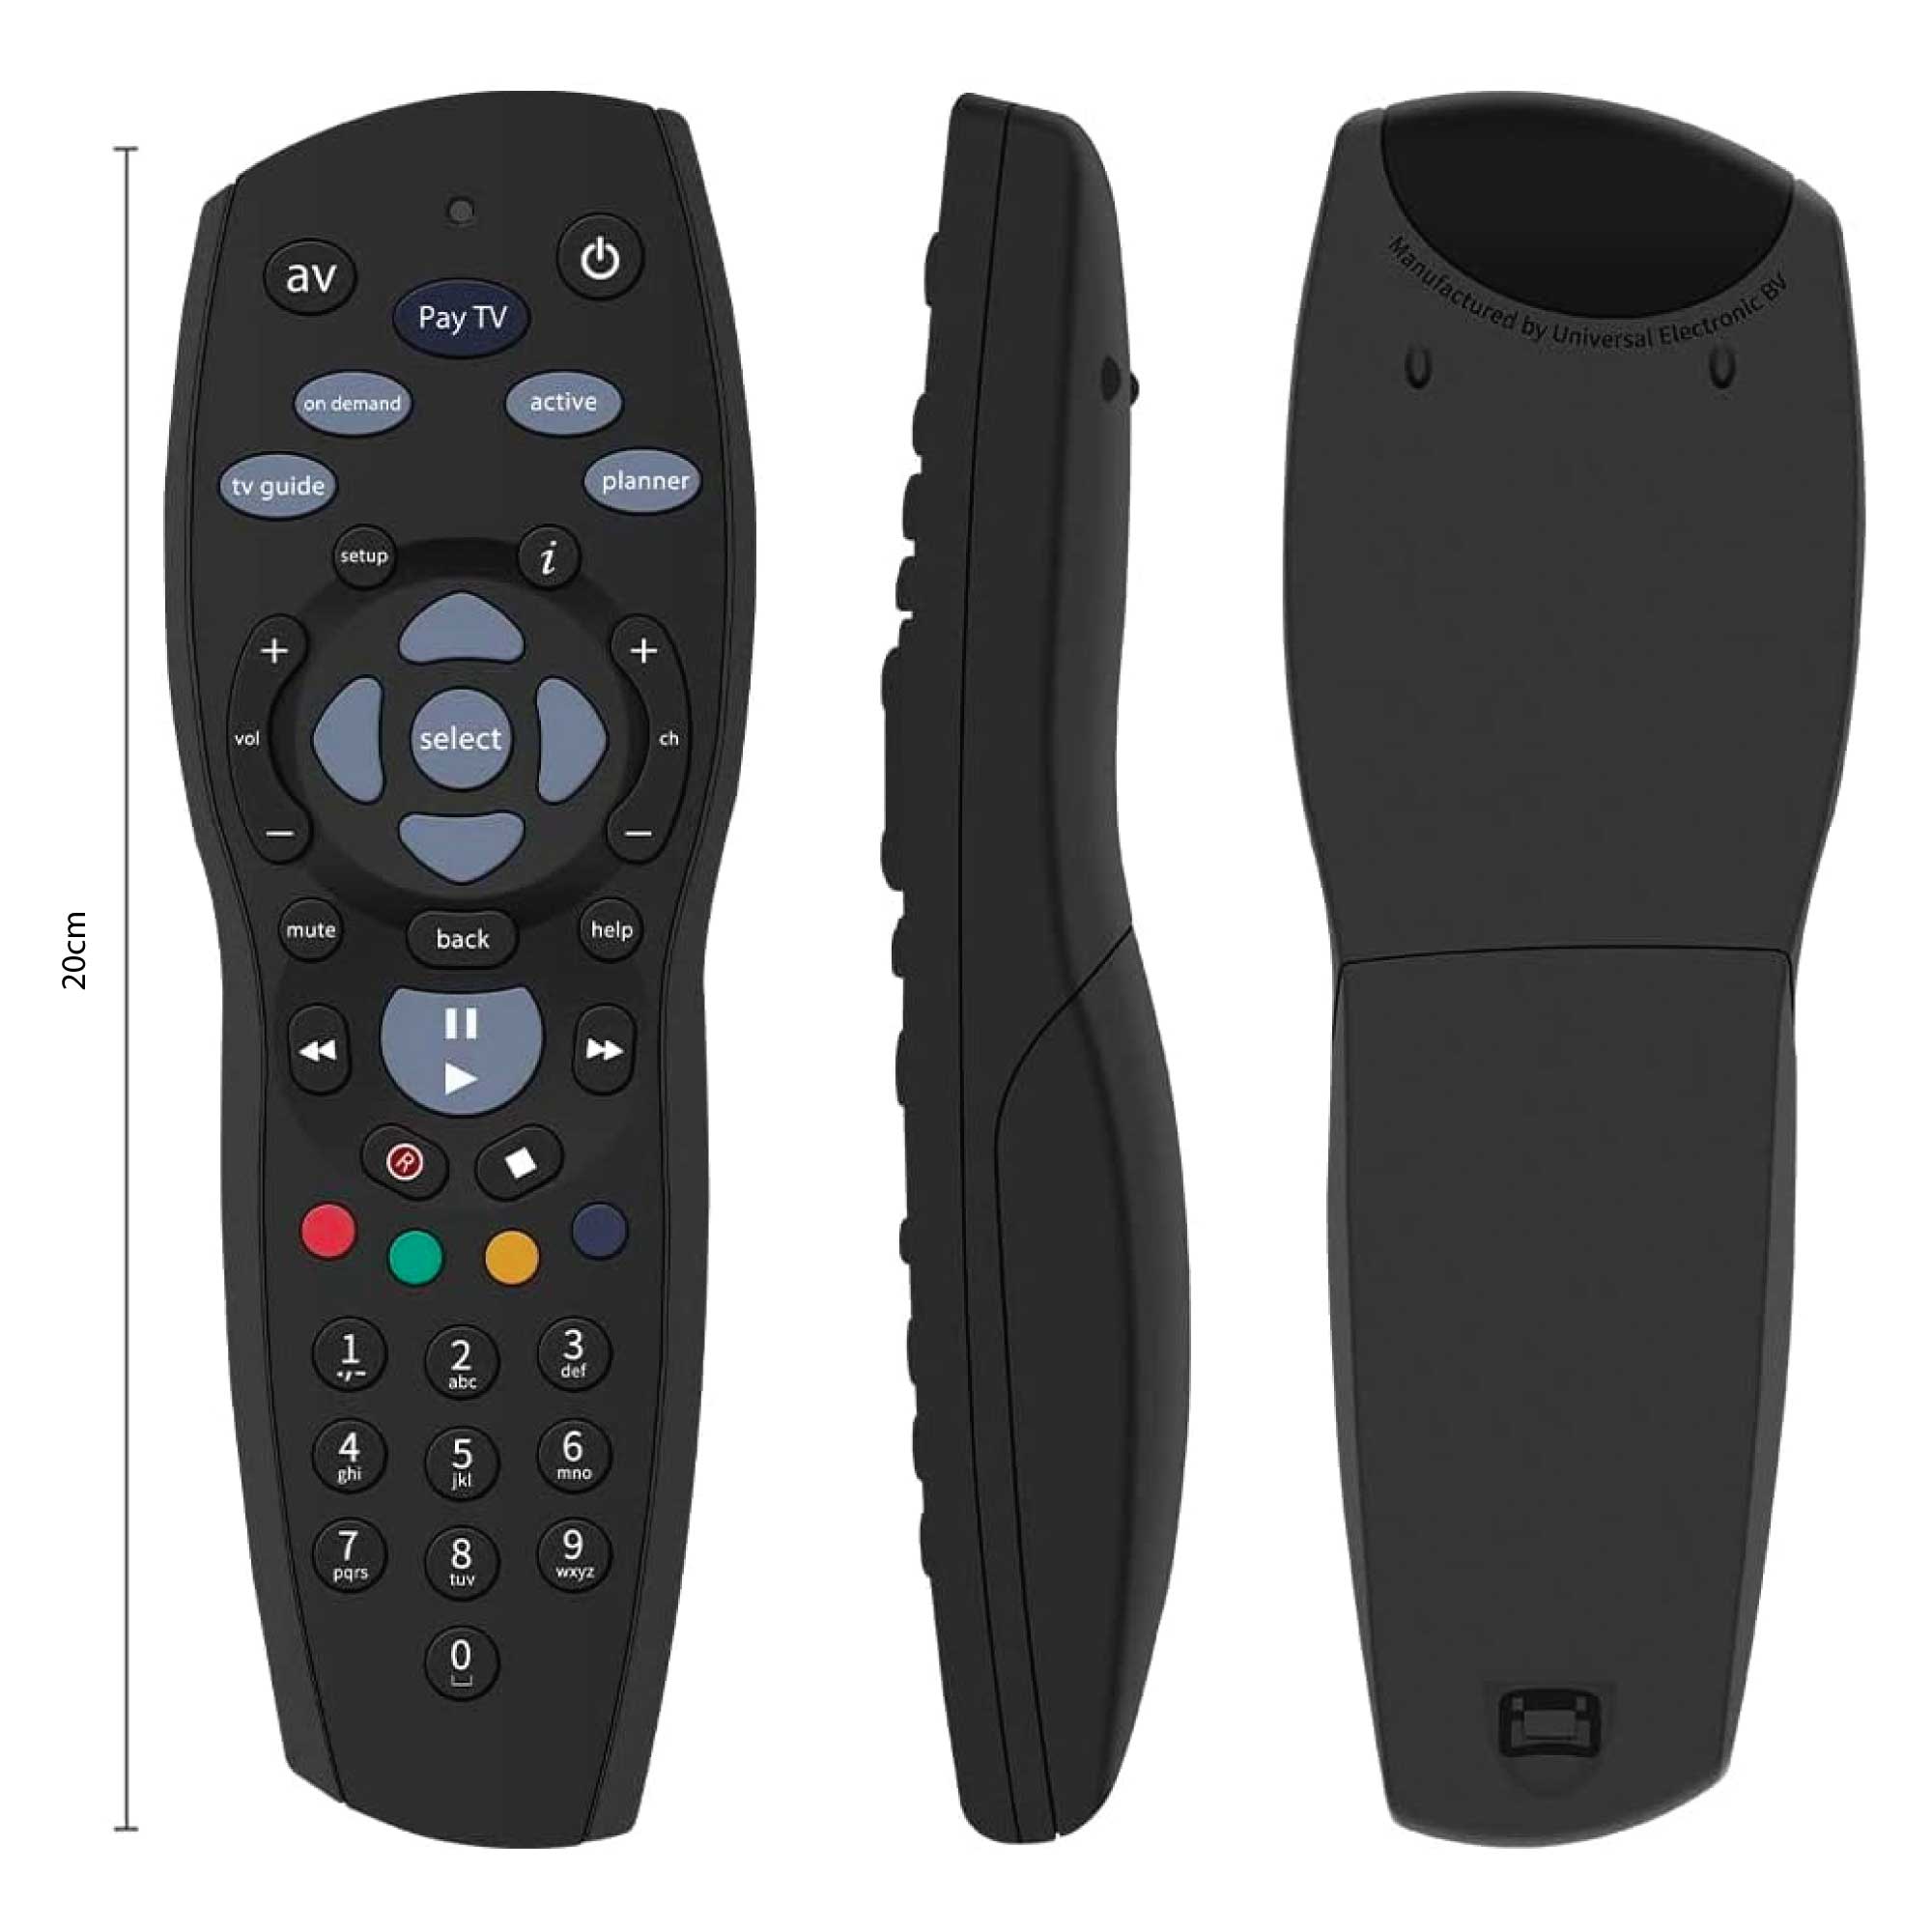 PAYTV Foxtel Remote Control Compatible Replacement Standard IQ IQ2 IQ3 IQ4 HD - Black